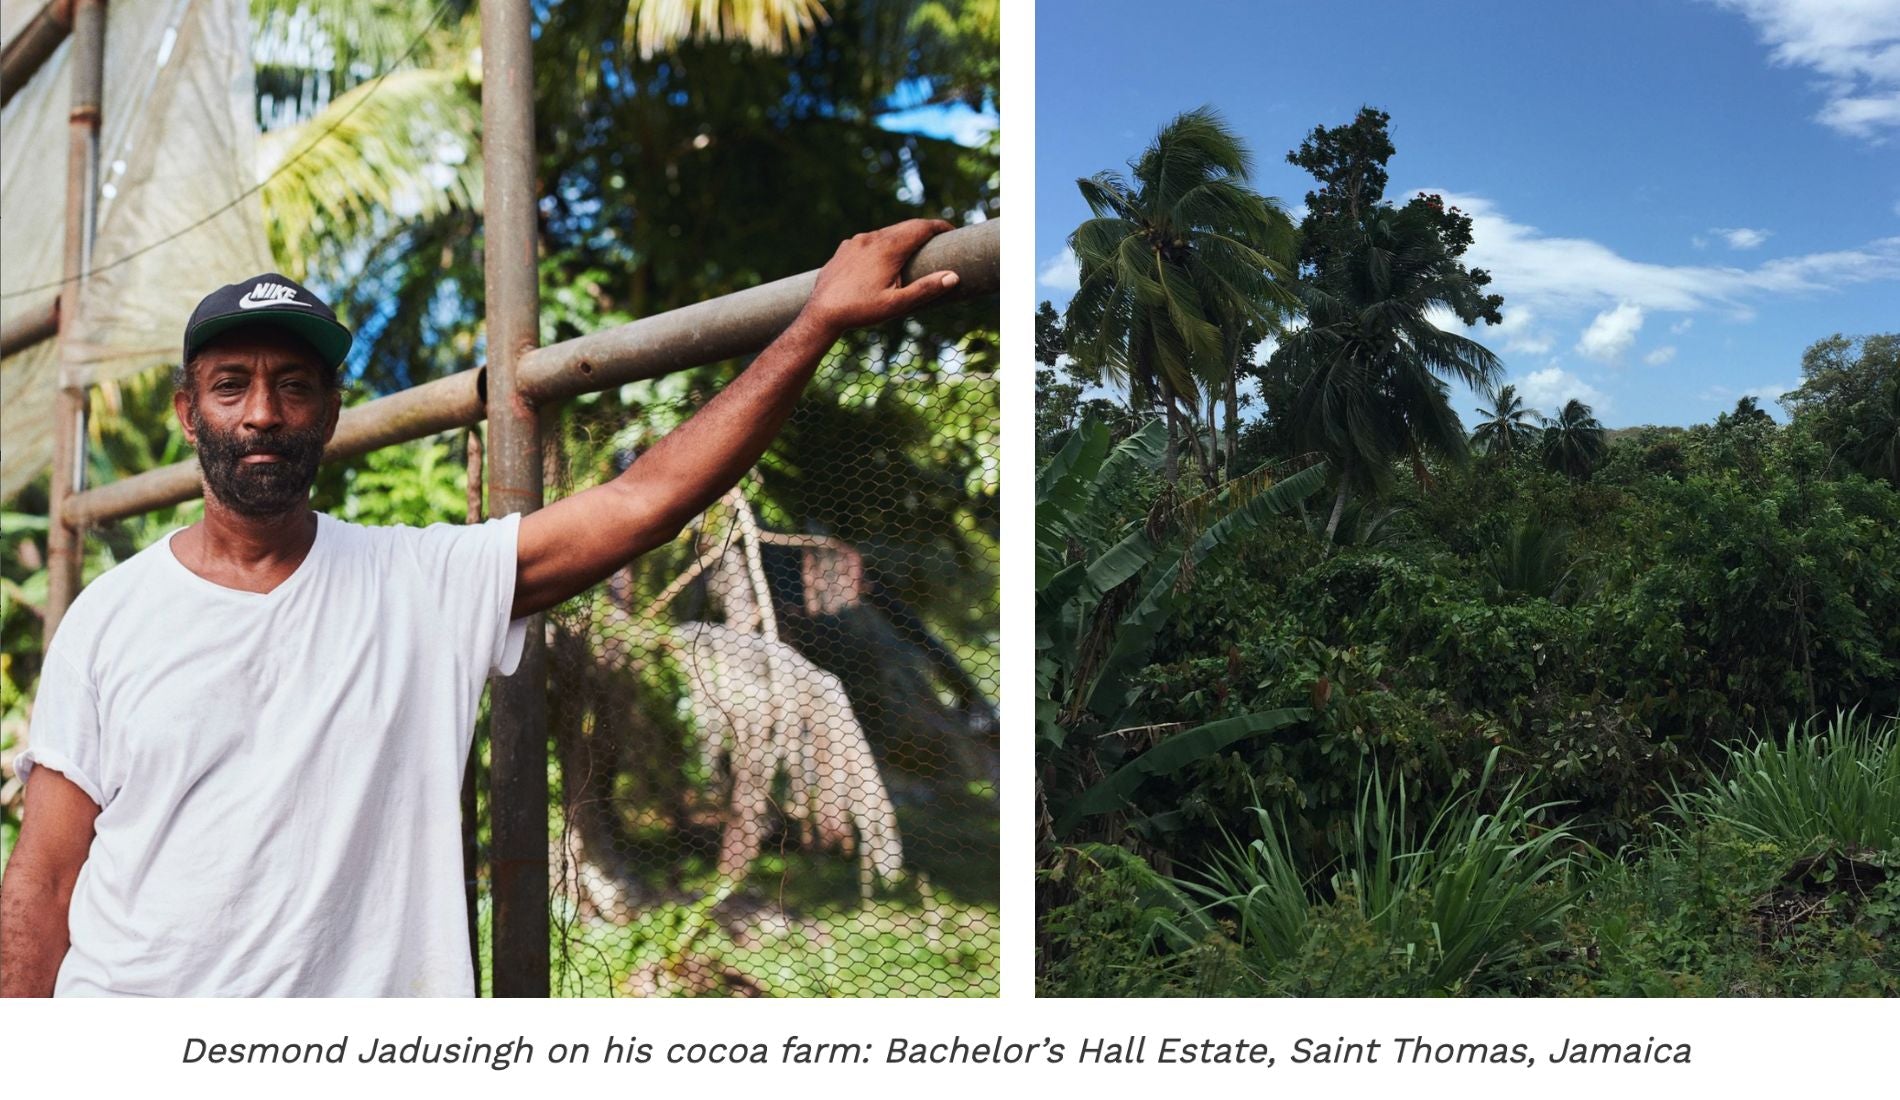 Desmond Jadusingh at his cocoa farm in Jamaica